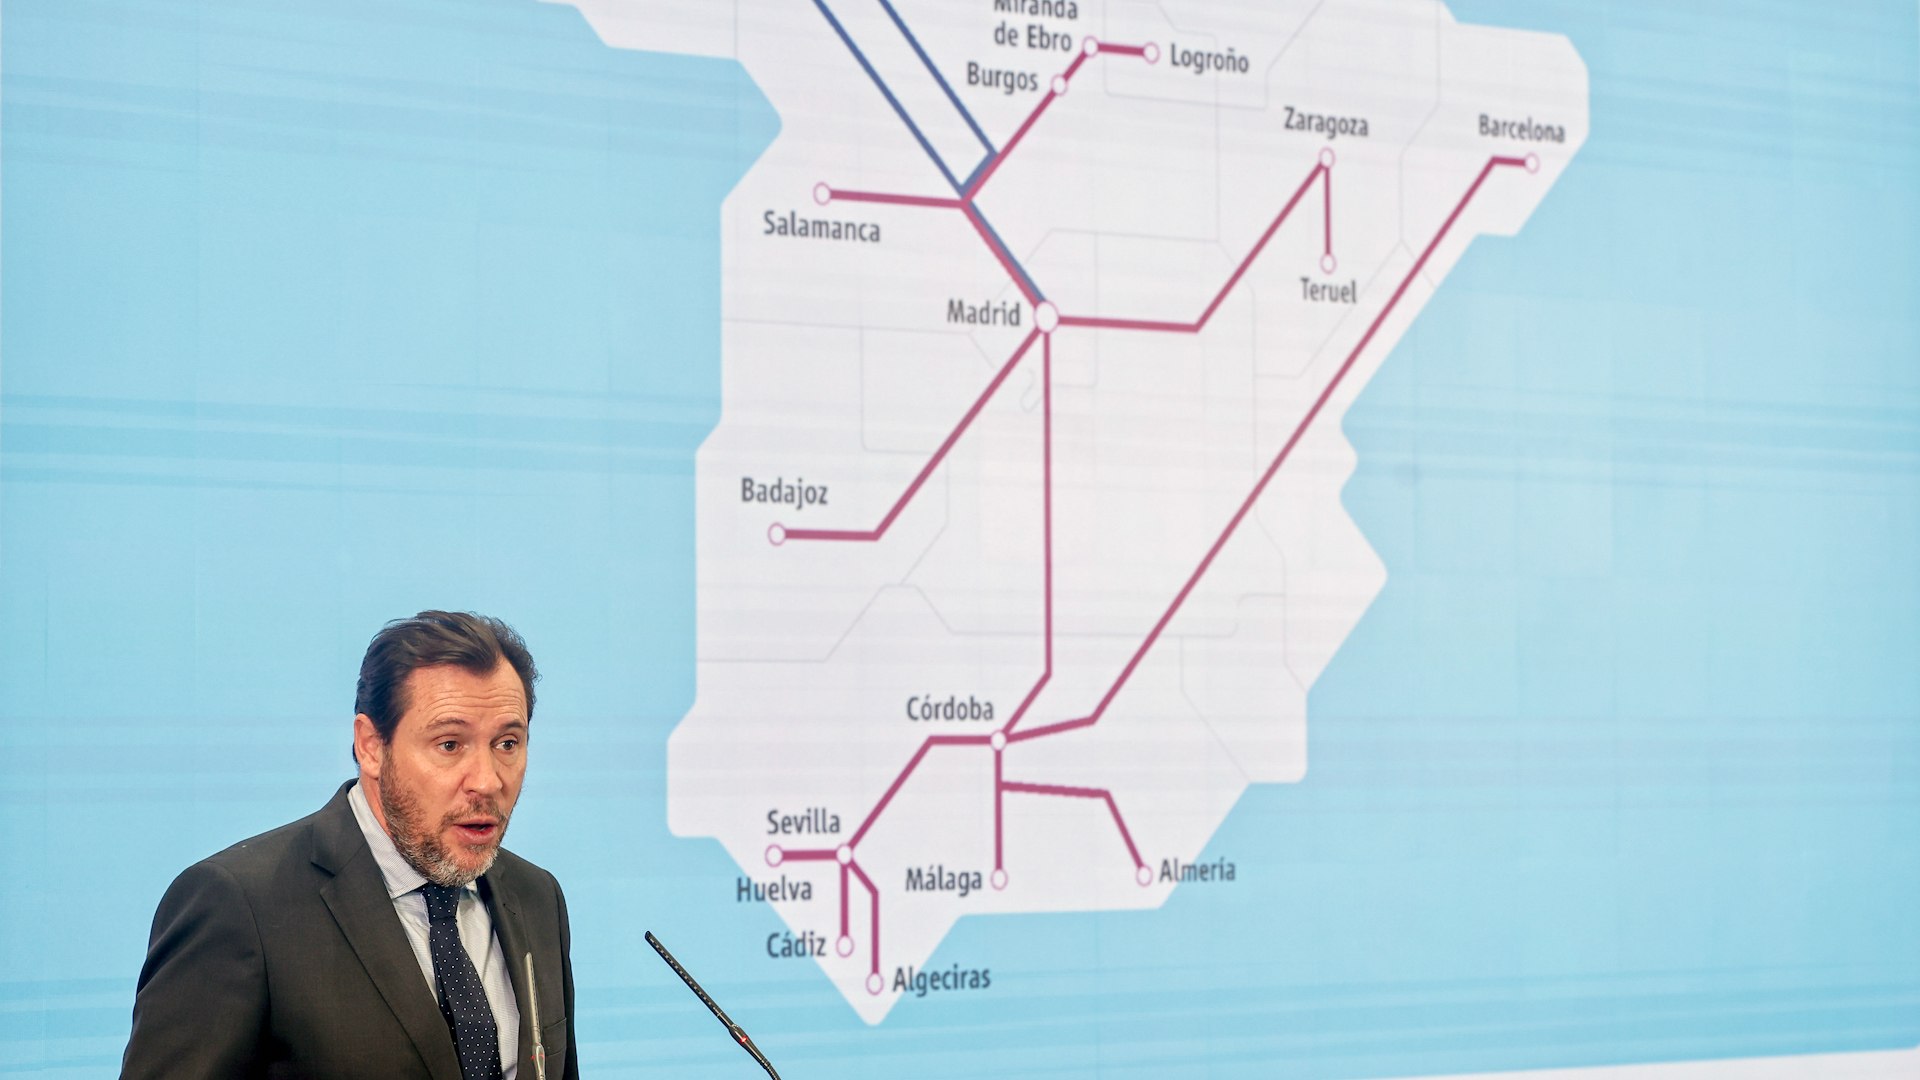 Logro�o, Teruel, Salamanca, Badajoz... Puente anuncia m�s trenes y servicios para las capitales sin alta velocidad